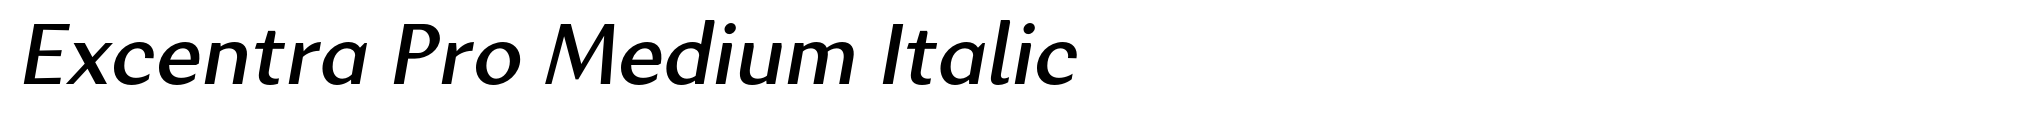 Excentra Pro Medium Italic image